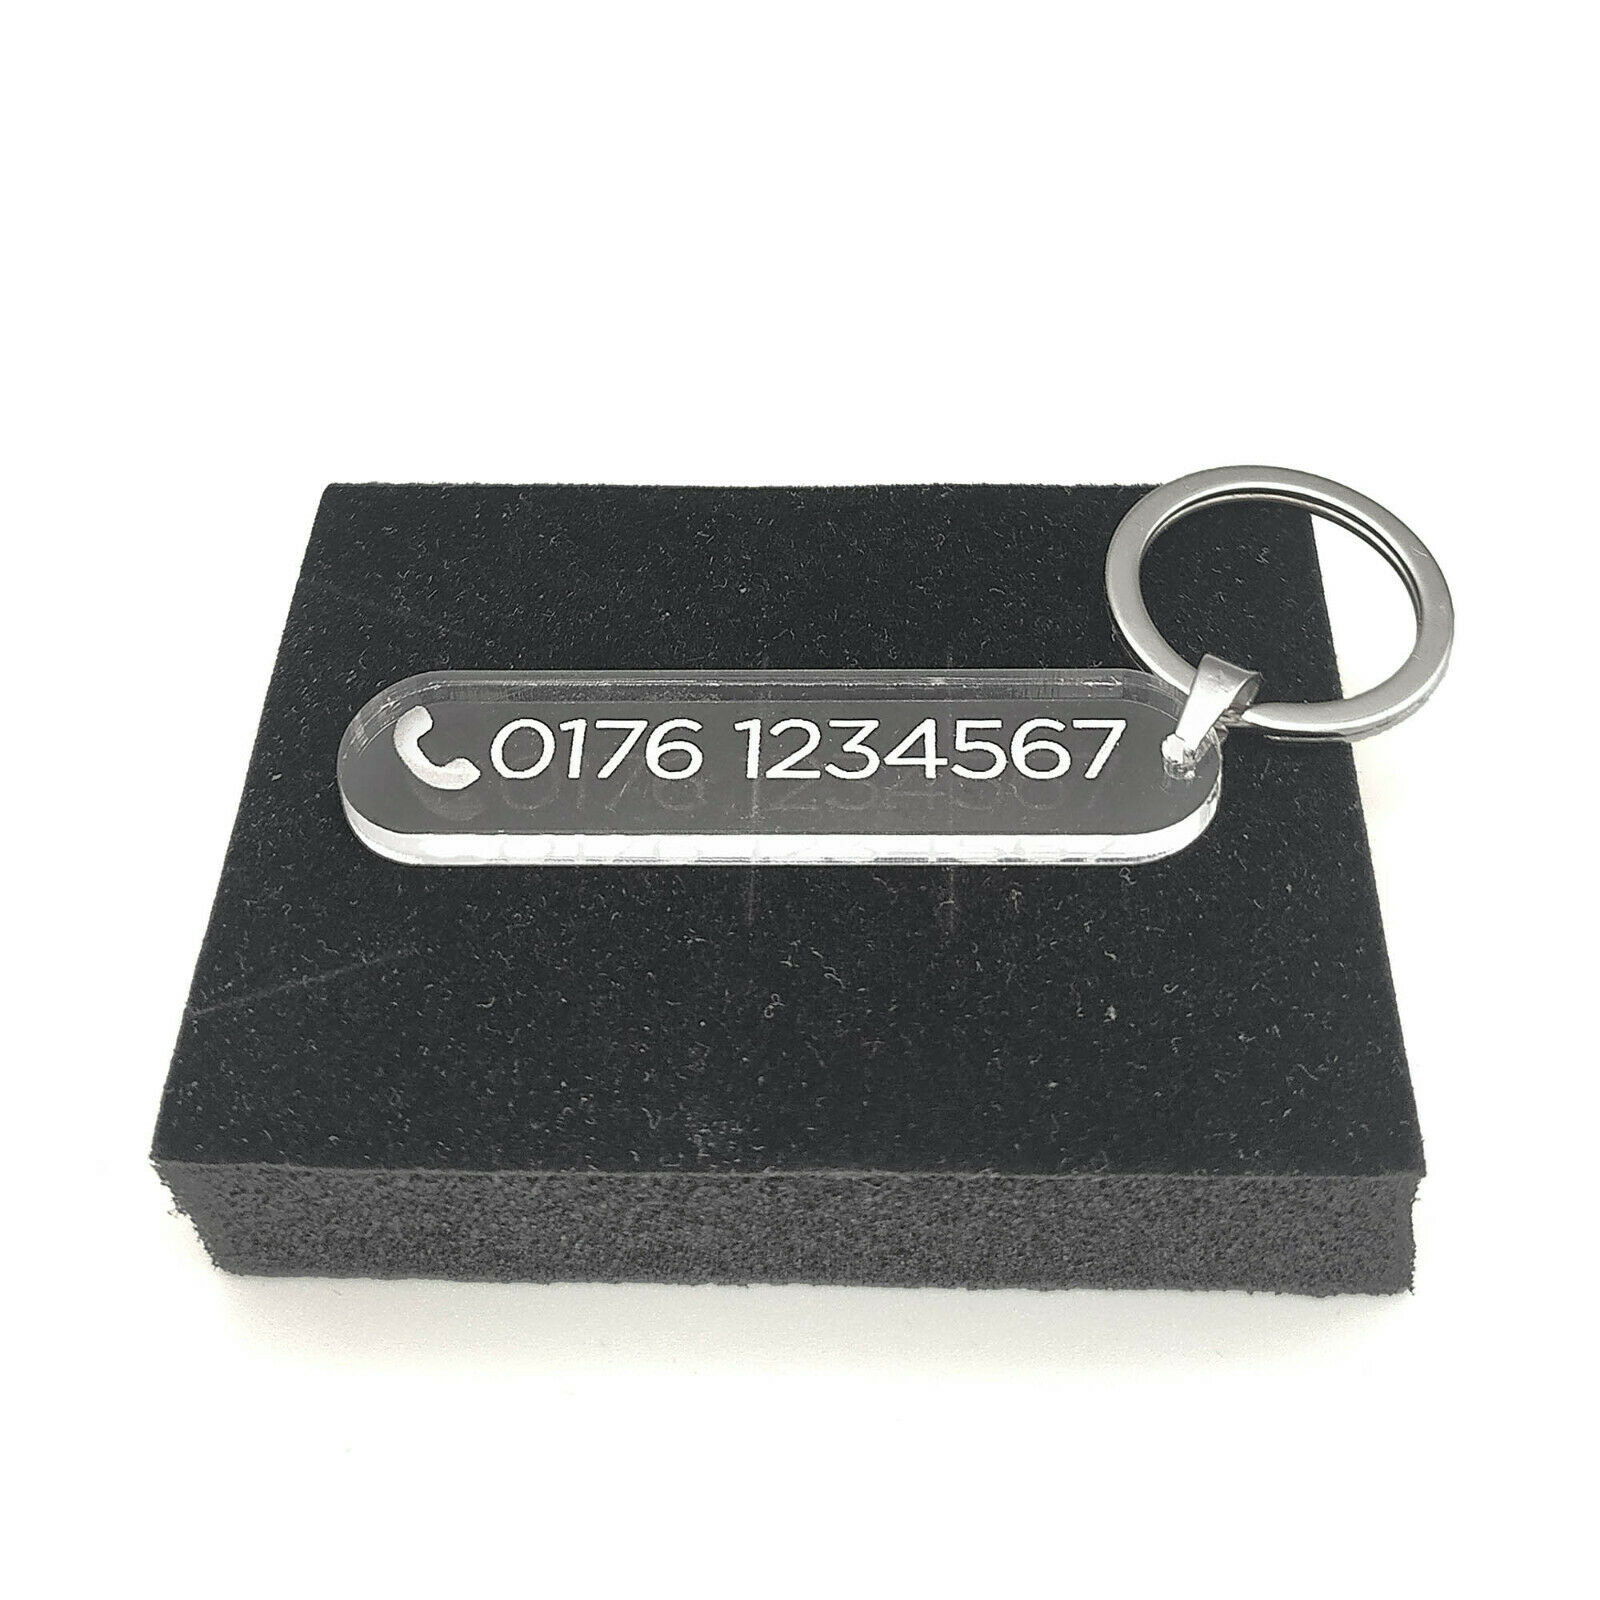 Personalisierter Acrylglas Schlüsselanhänger - Telefonnummer Adresse Text Gravur